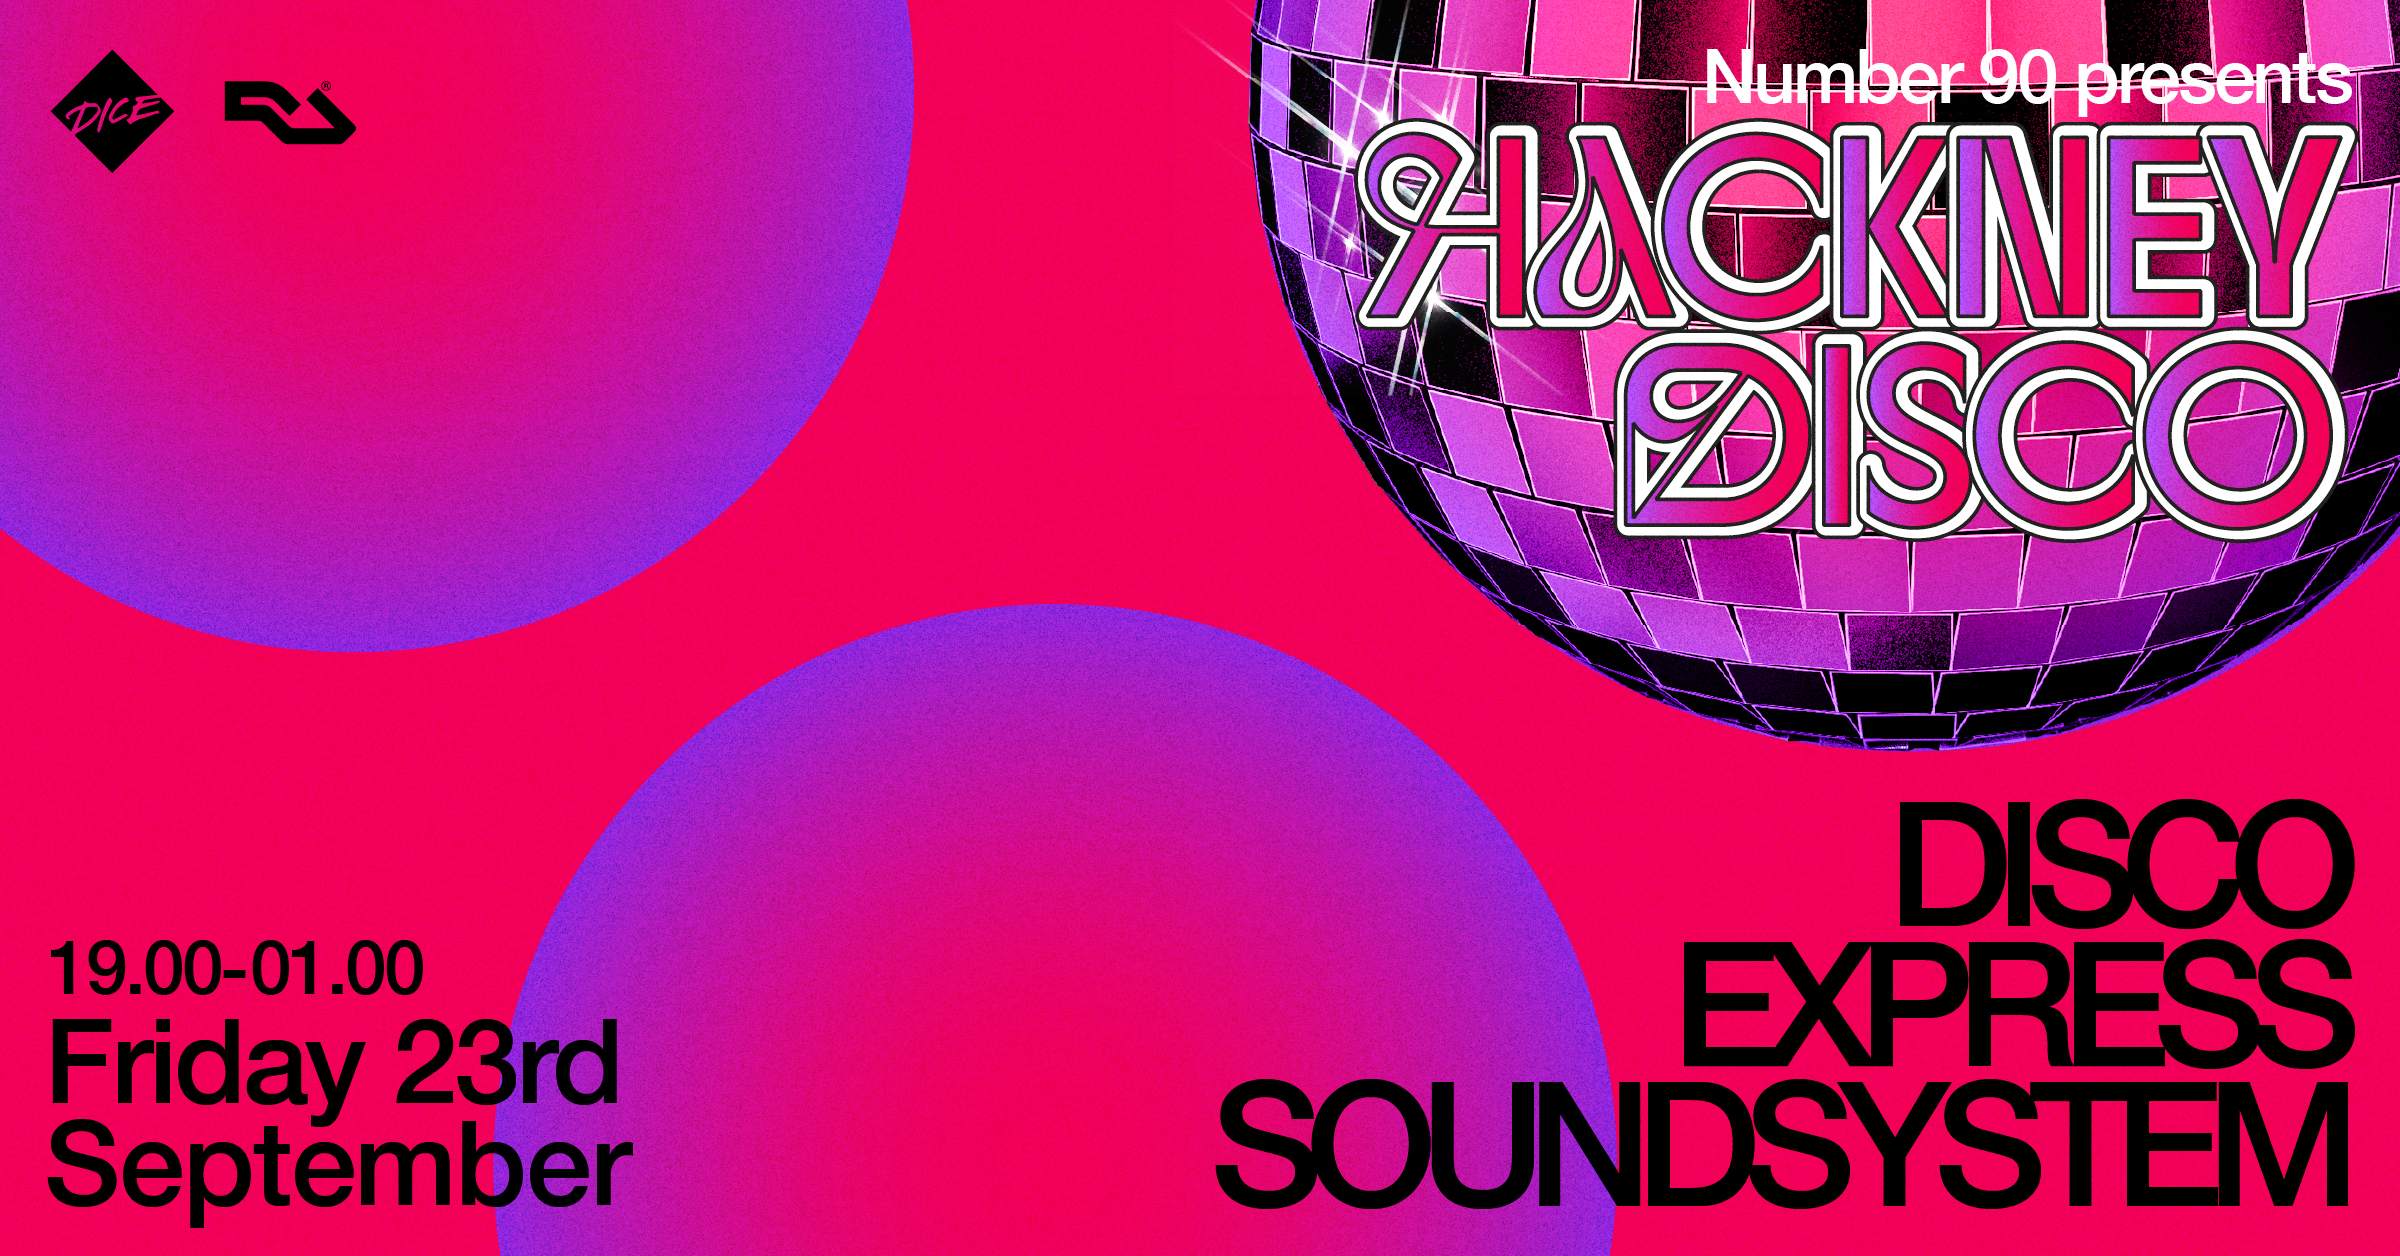 Number 90 presents: Disco Express Soundsystem - Flyer front